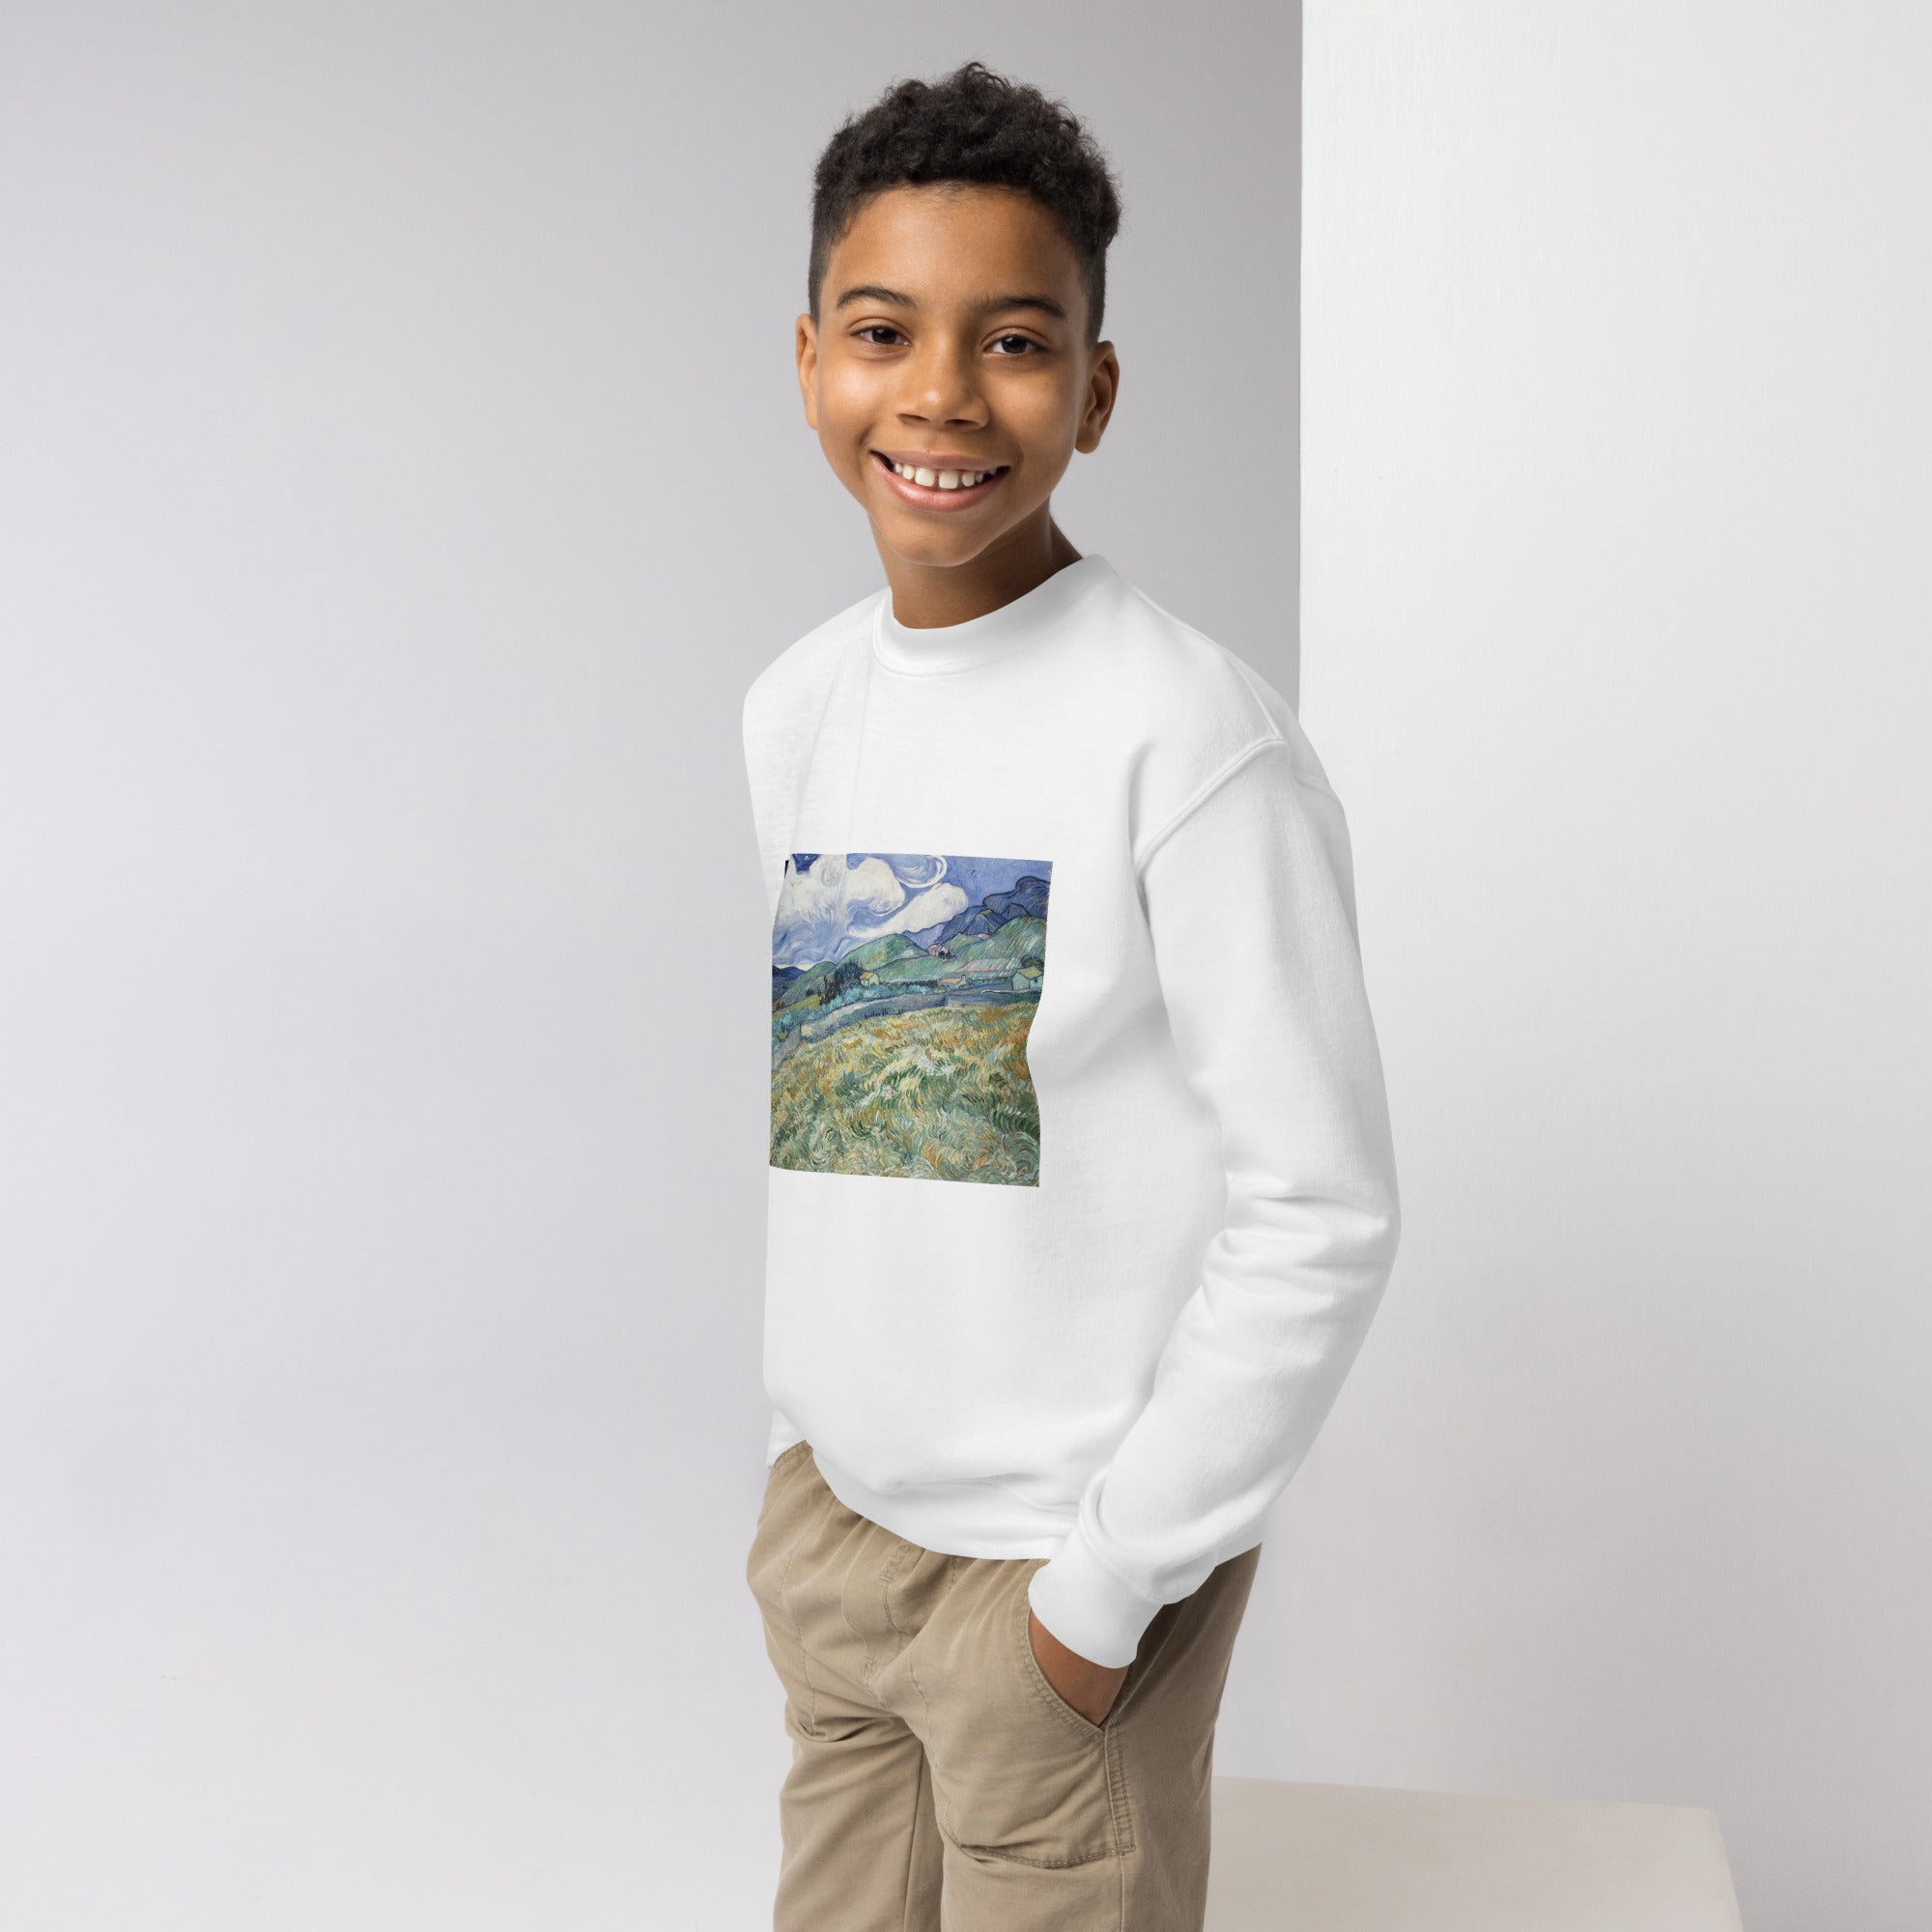 Vincent van Gogh 'Landscape from Saint-Rémy' Famous Painting Crewneck Sweatshirt | Premium Youth Art Sweatshirt